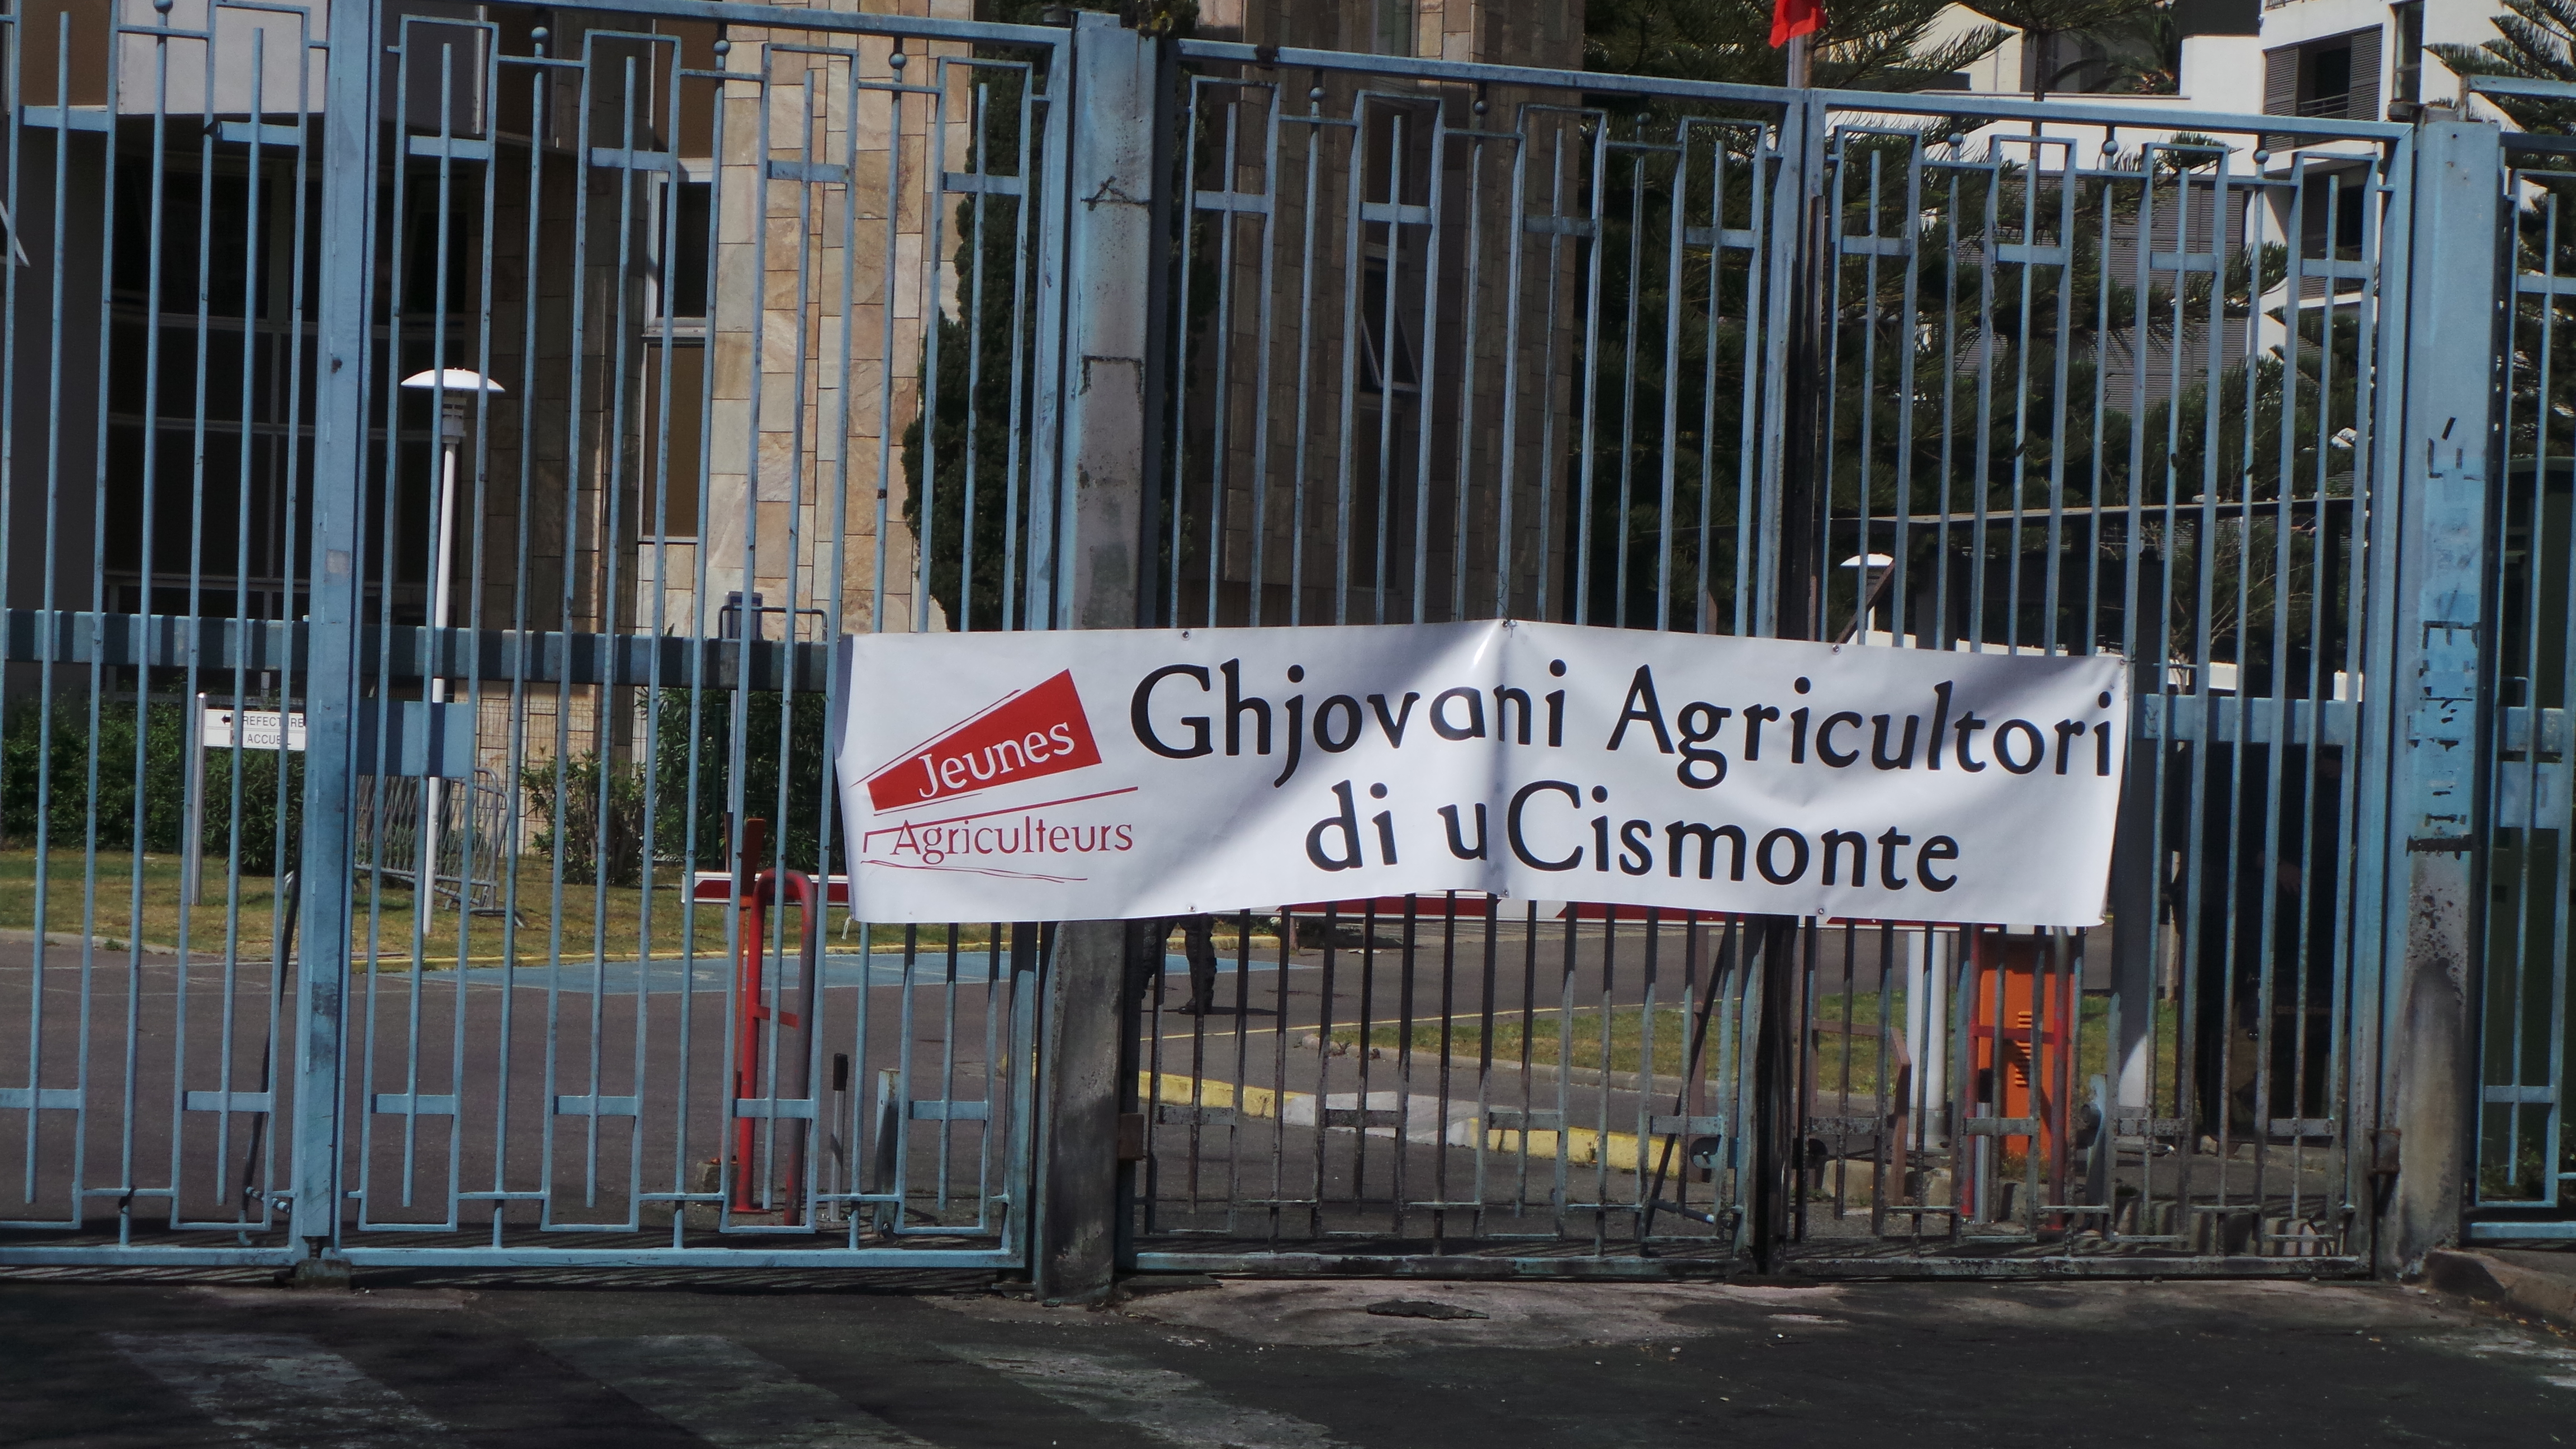 Après la manifestation de Bastia : 3 jeunes agriculteurs seront jugés le 30 Juin